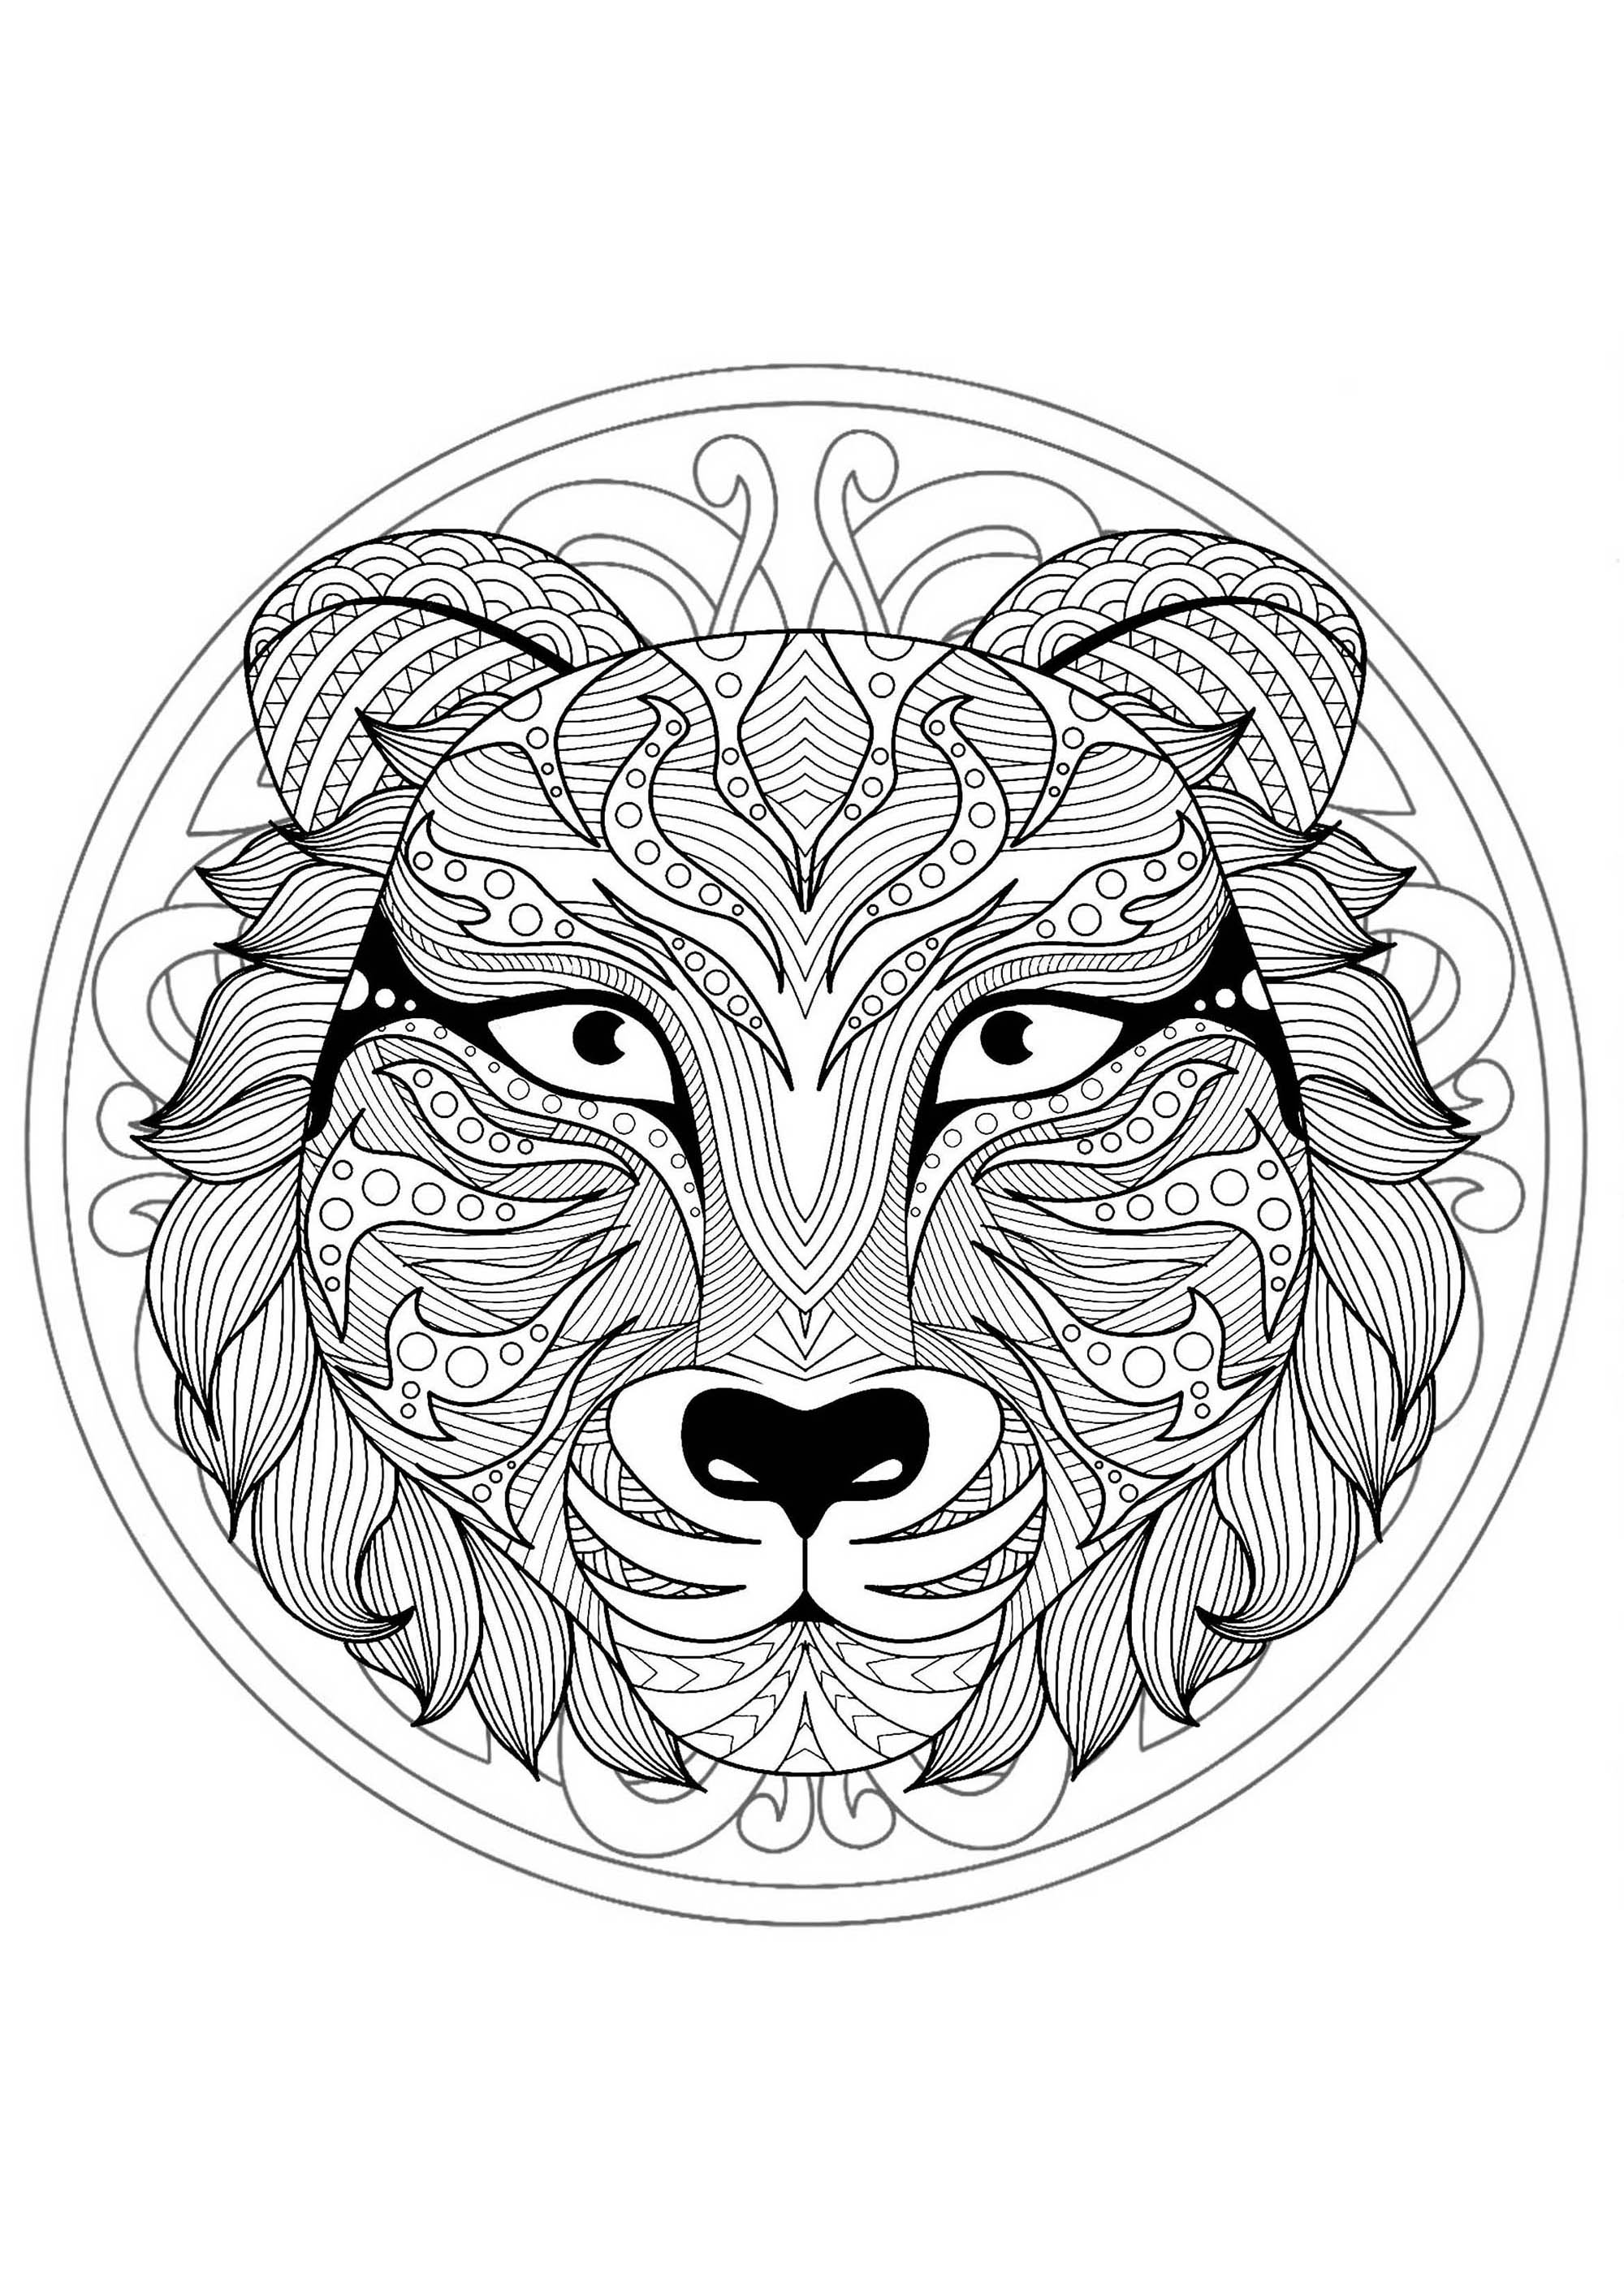 Superbe mandala plein de motifs créé avec une tête de tigre